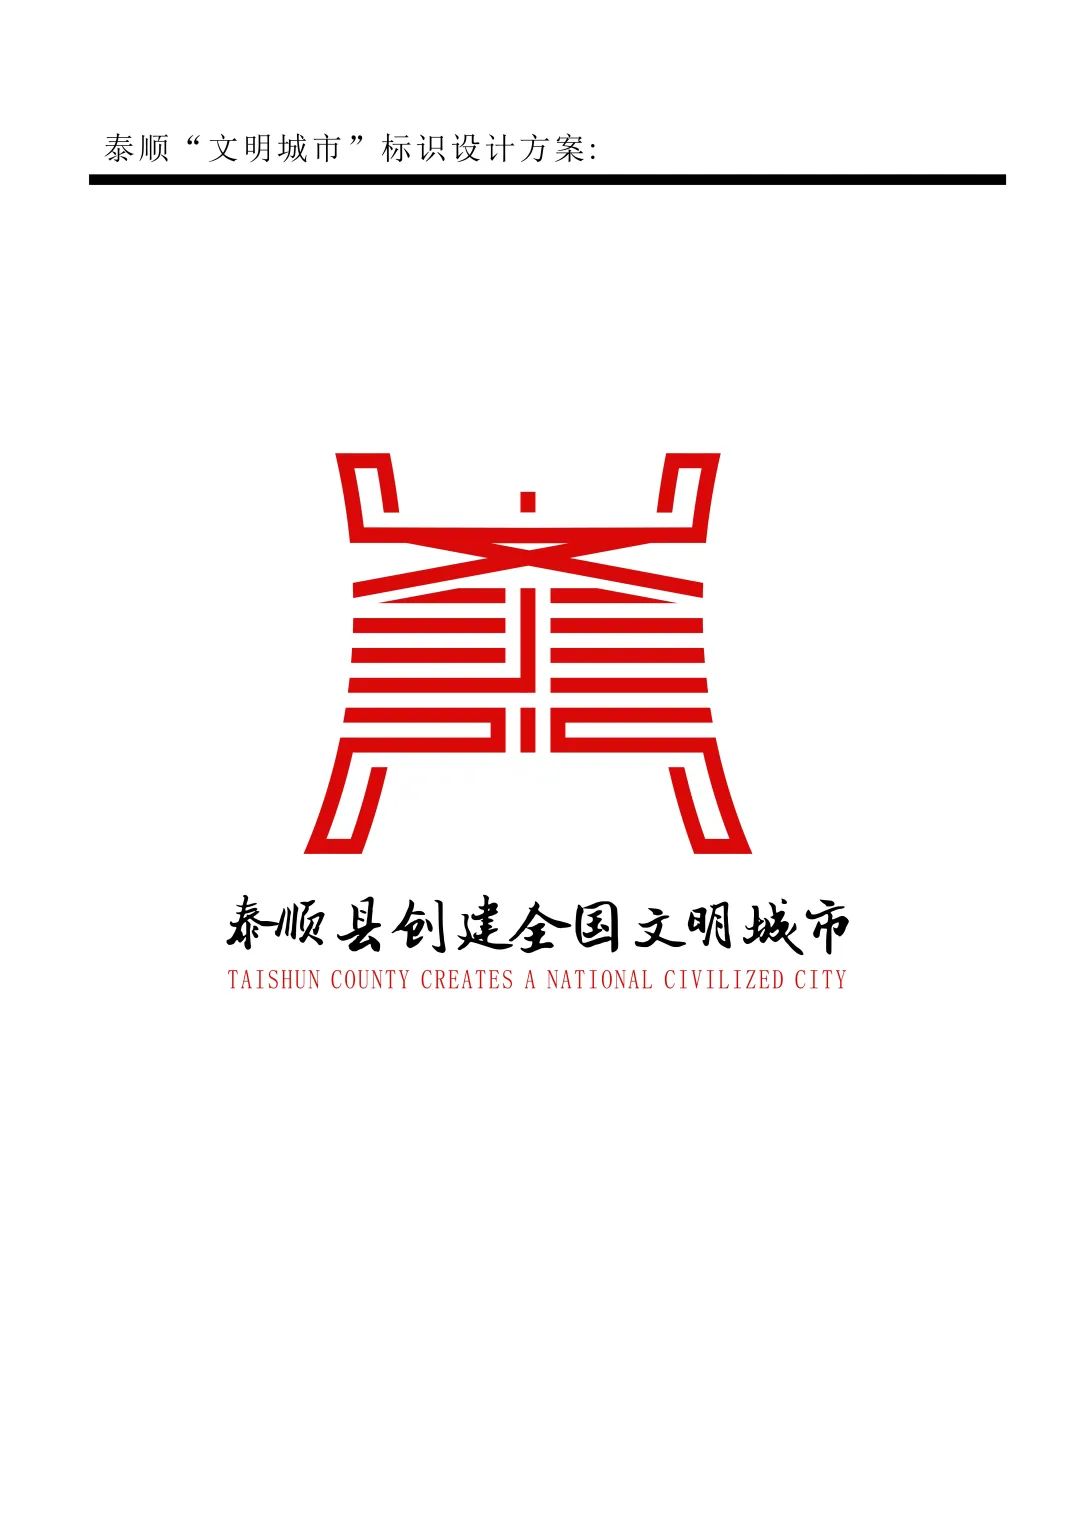 泰顺县创建文明城市主题logo和宣传口号征集结果出炉